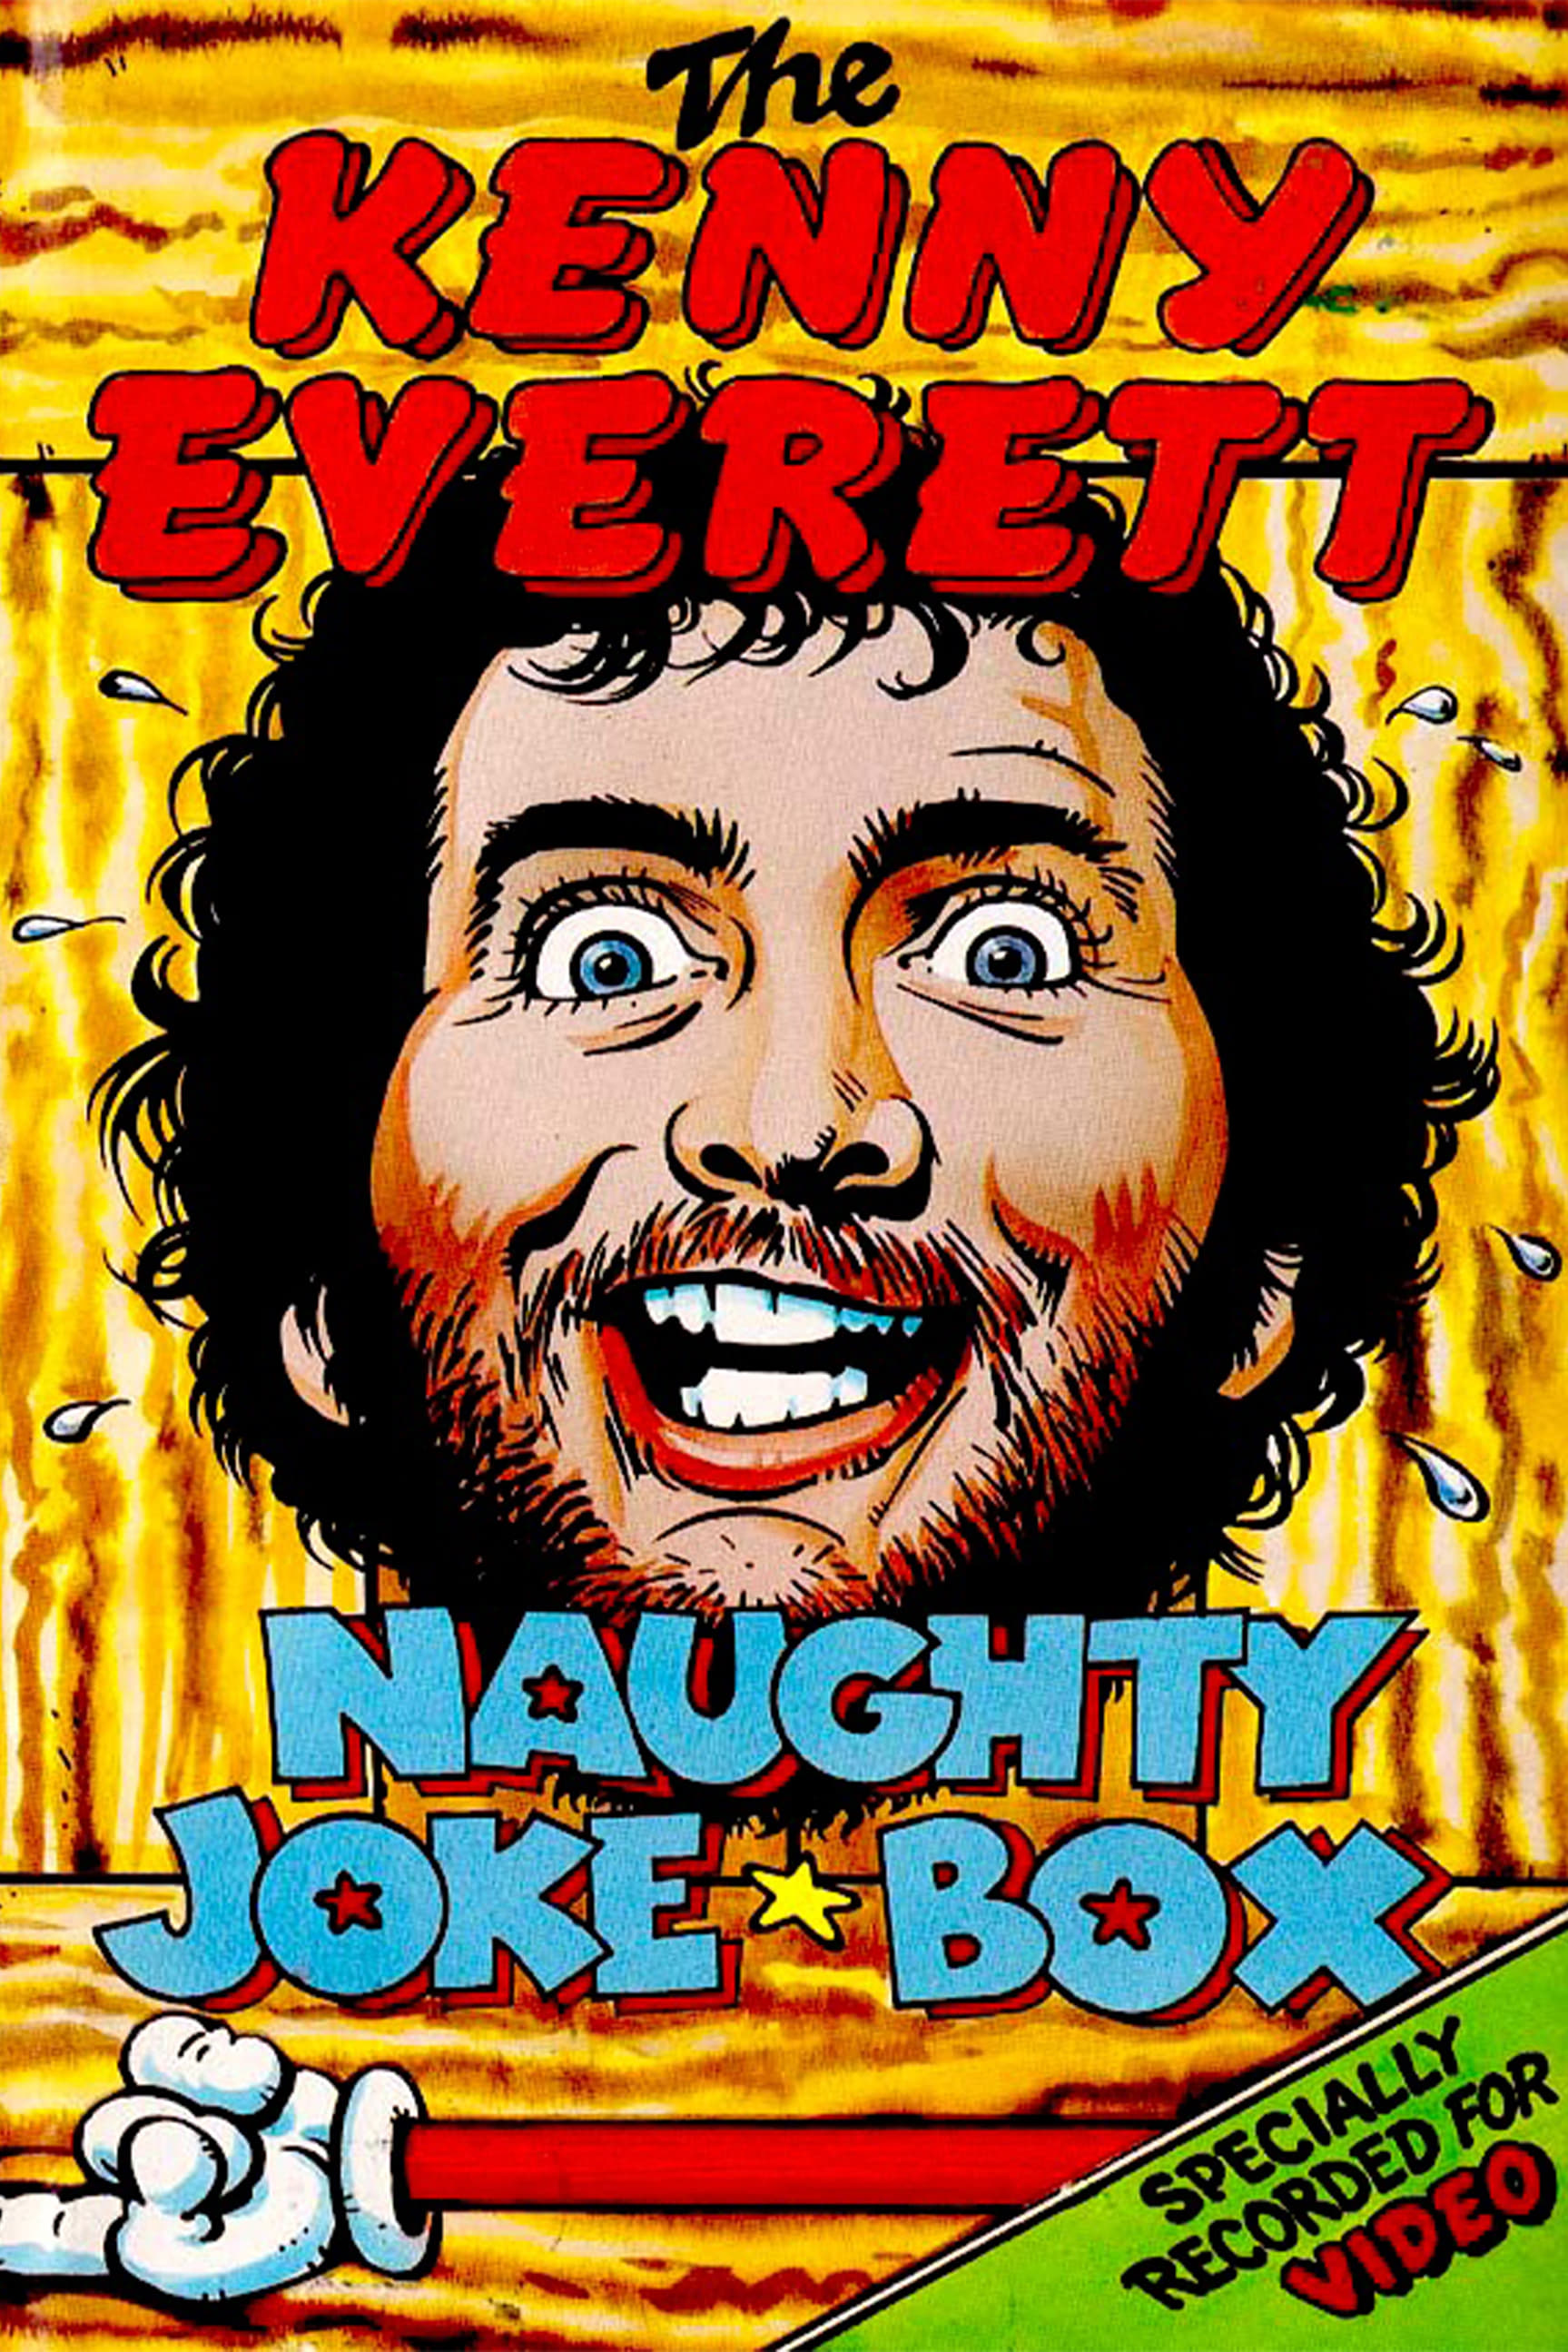 The Kenny Everett Naughty Joke Box